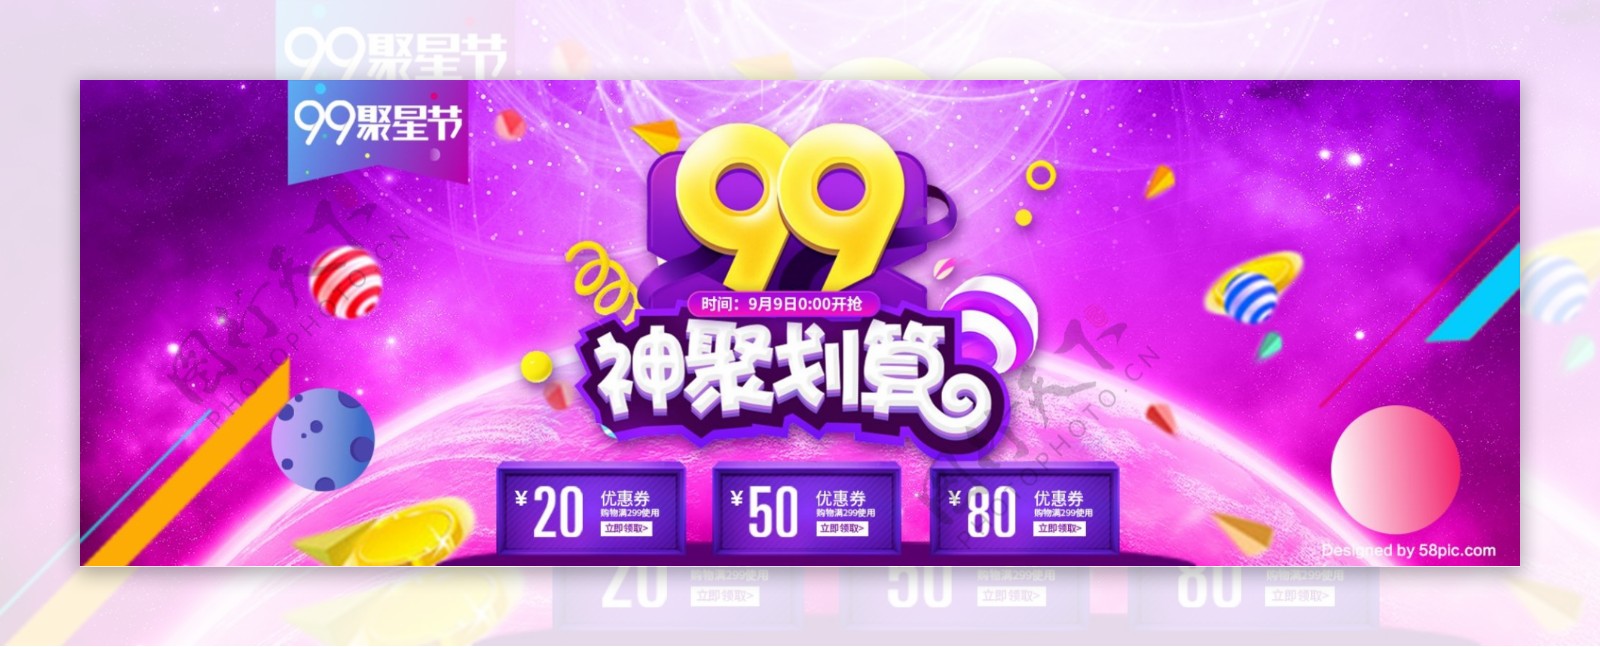 天猫淘宝电商炫酷99聚星节海报促销时尚banner模板